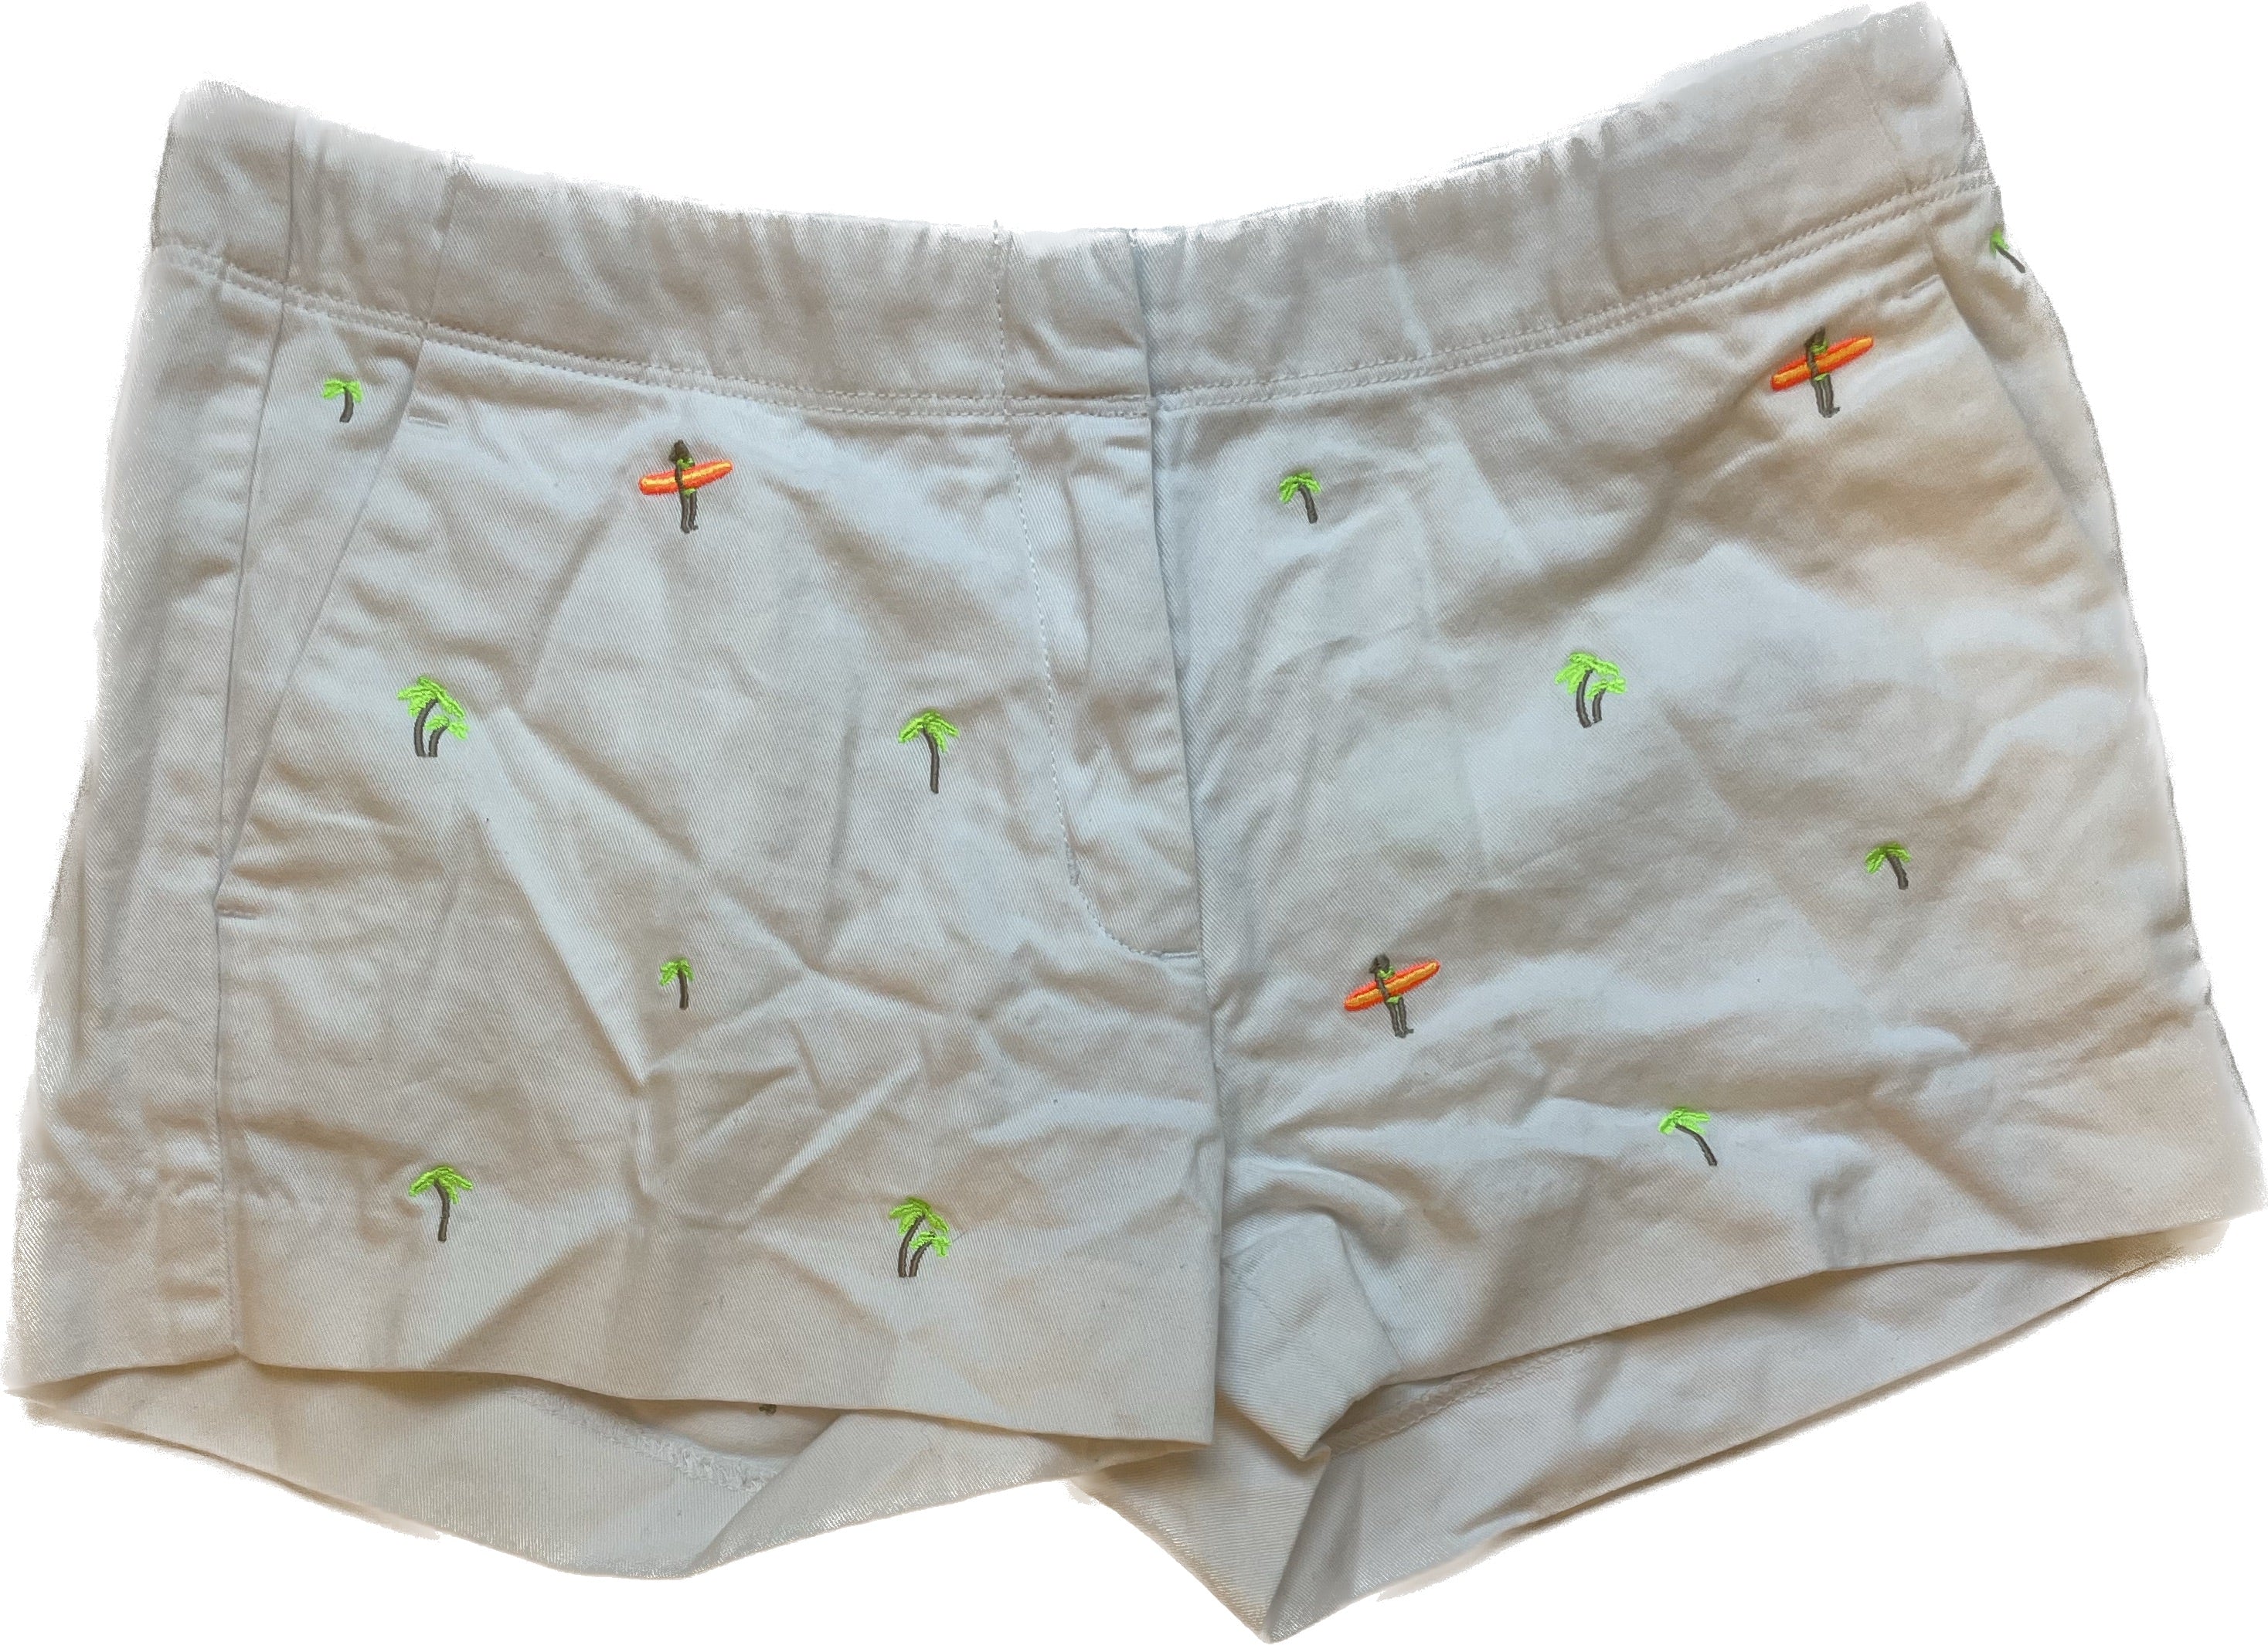 Crewcuts Shorts, White/Palm Tree Girls Size 14